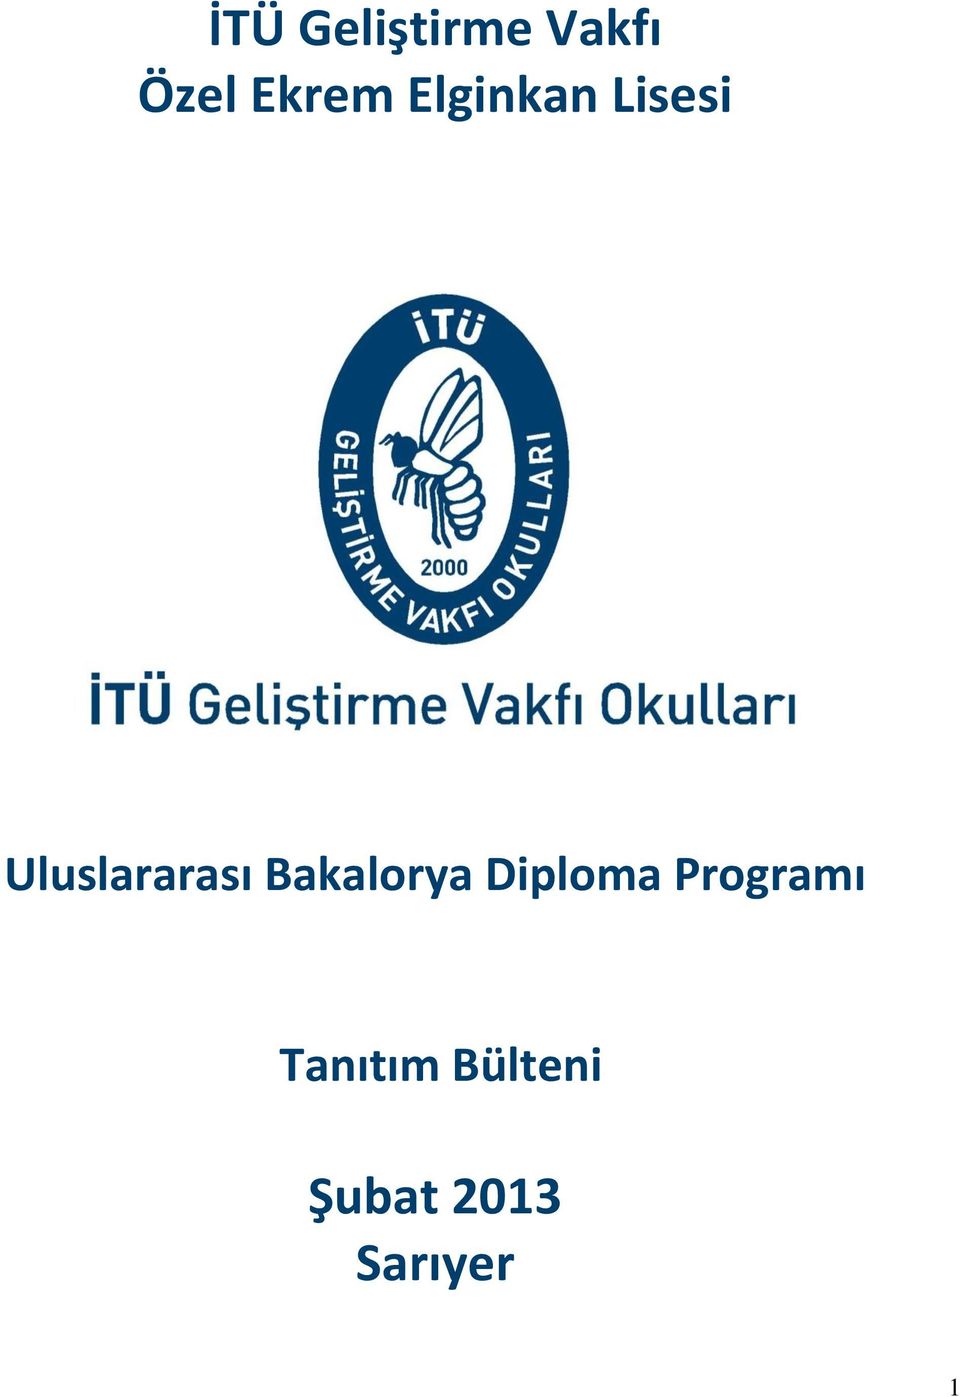 Uluslararası Bakalorya Diploma